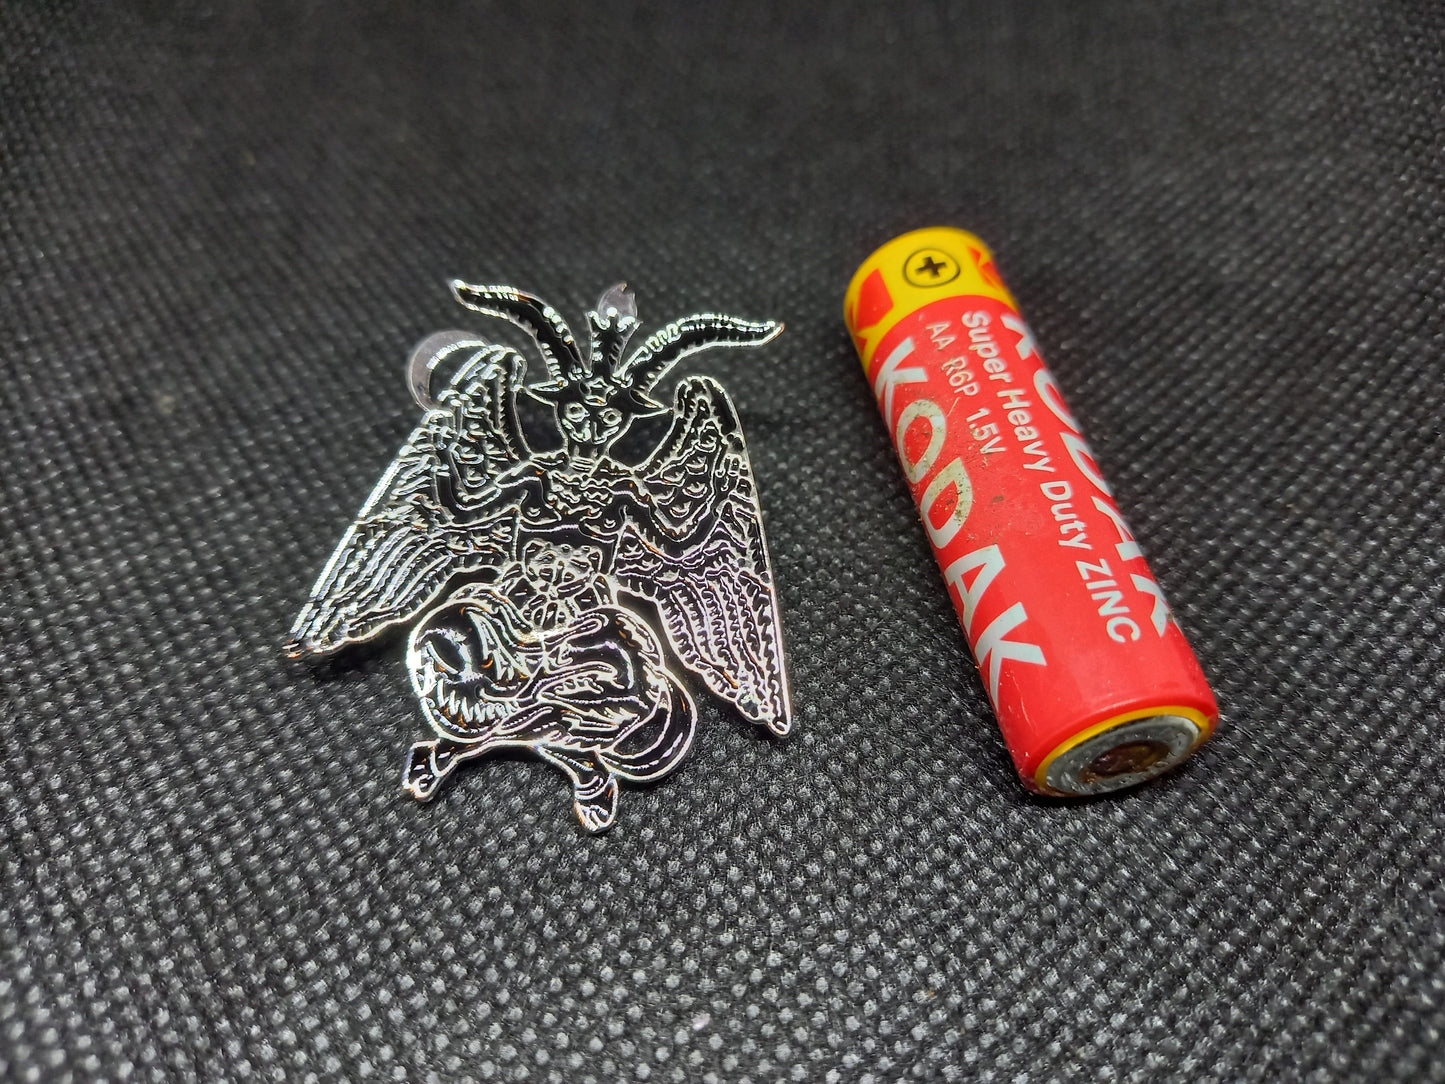 Occult Satanic large black enamel "Baphomet" pin badge